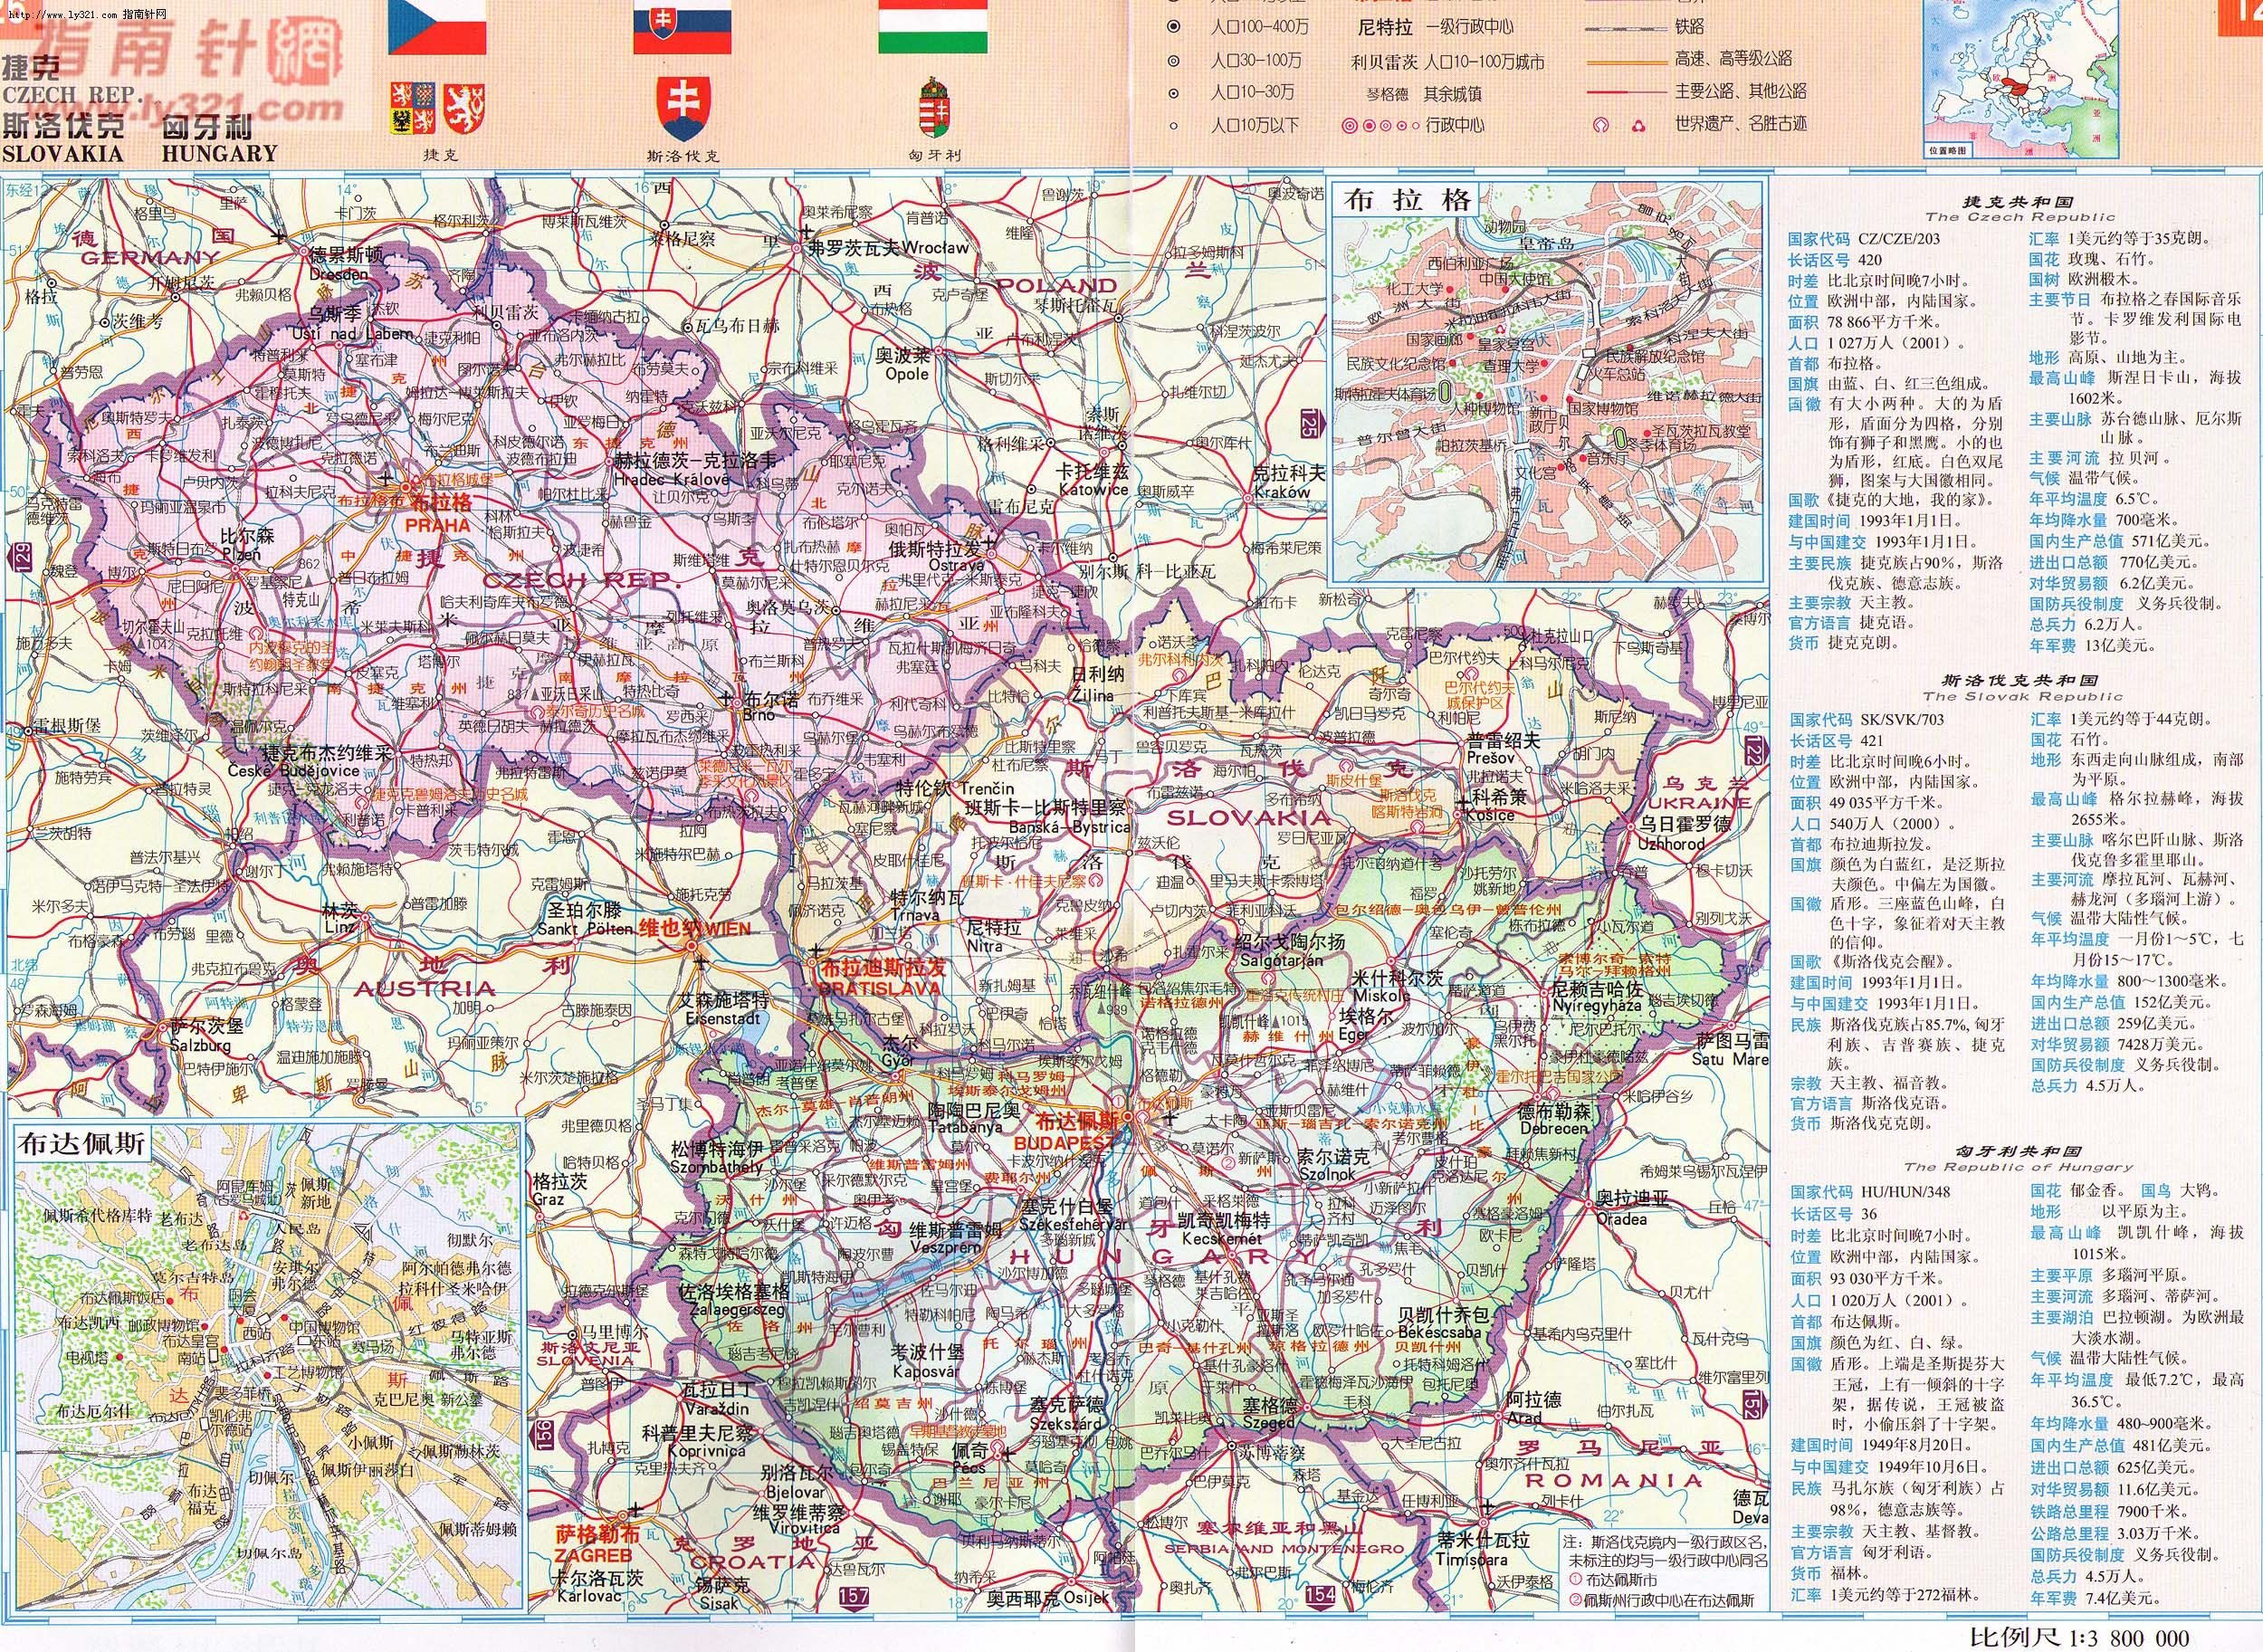 世界地圖-斯洛伐克.jpg